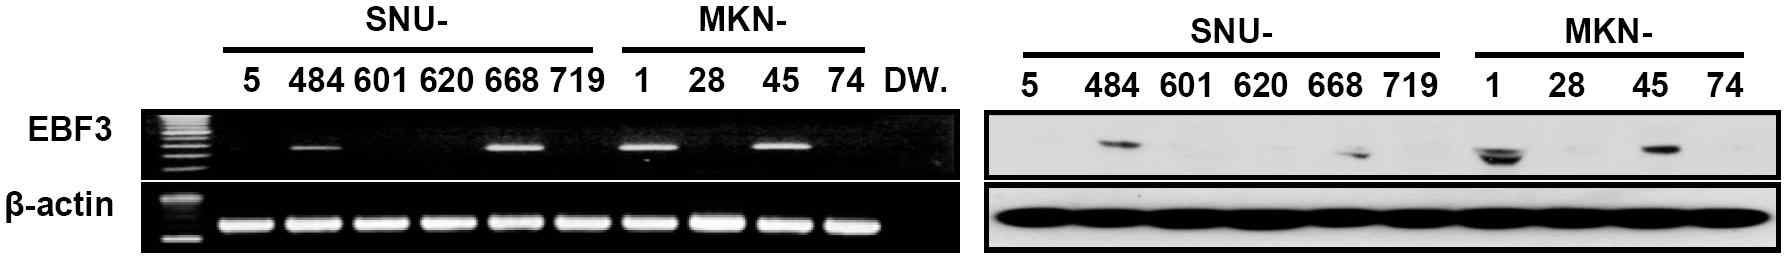 그림 11. 위암 세포주에서의 EBF mRNA and protein 발현